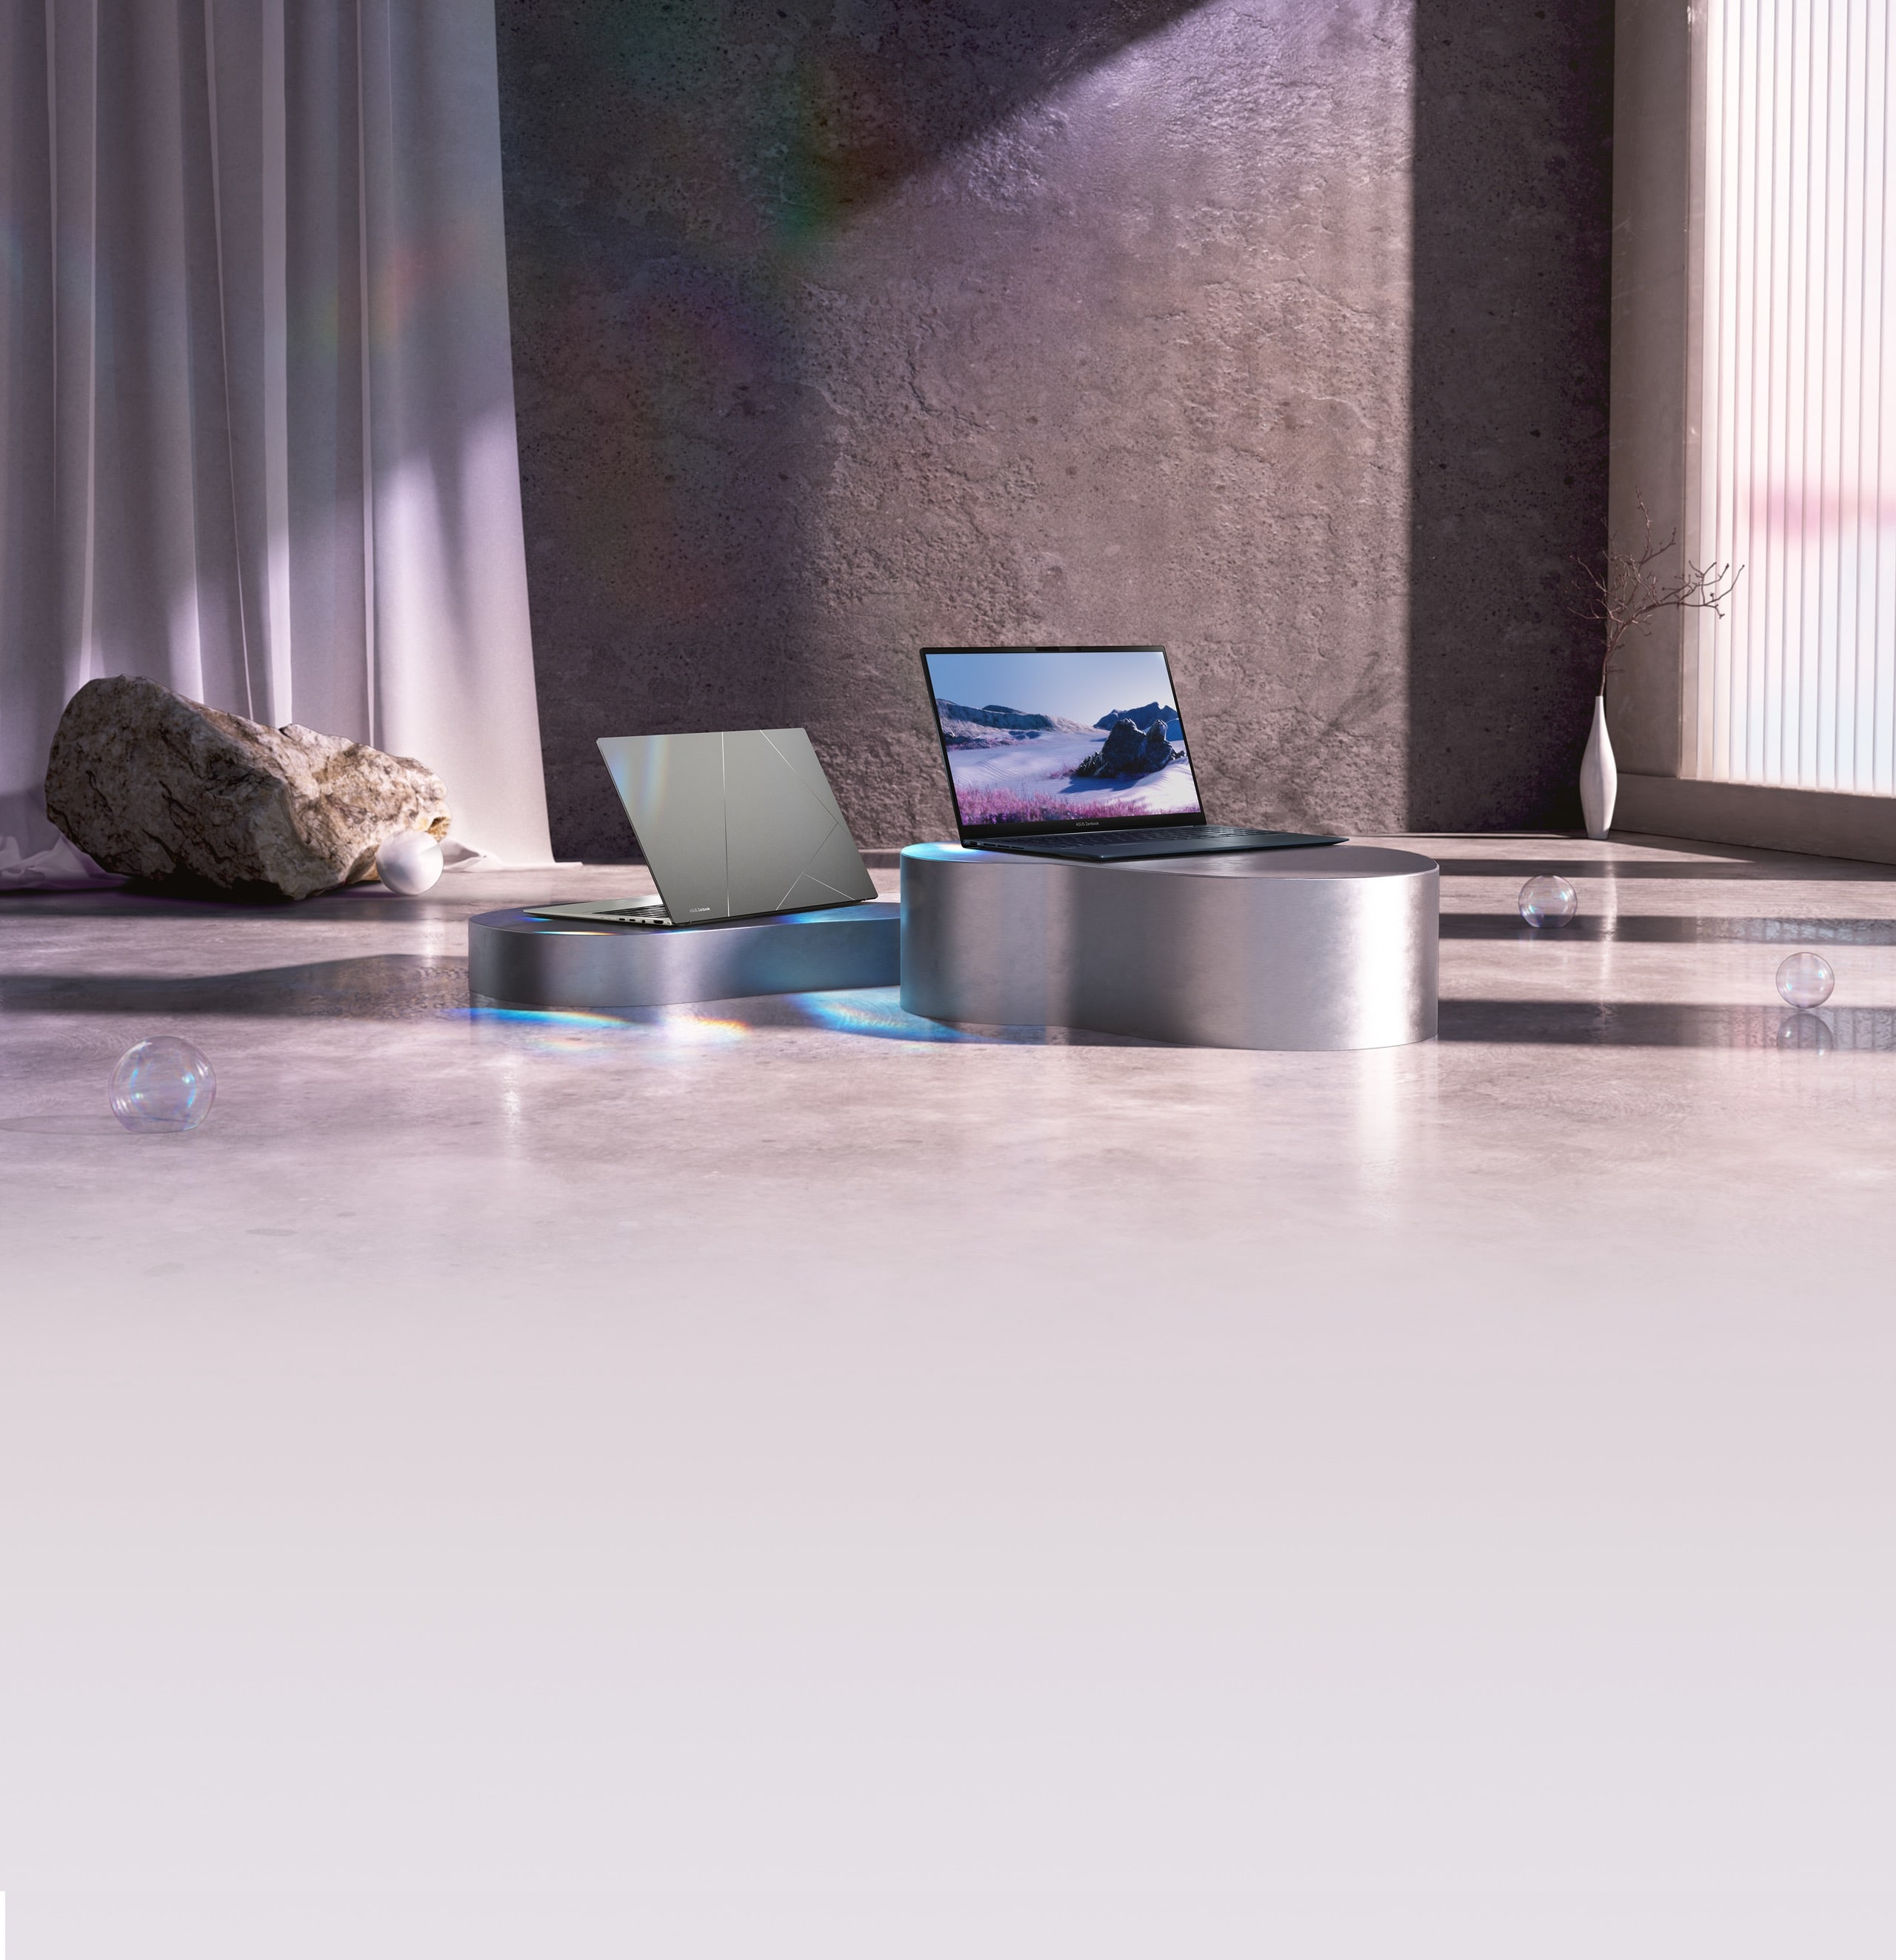 金屬桌面上放置磐石灰和紳士藍 Zenbook 15 OLED 筆電，背景是深色混凝土牆面和窗簾。